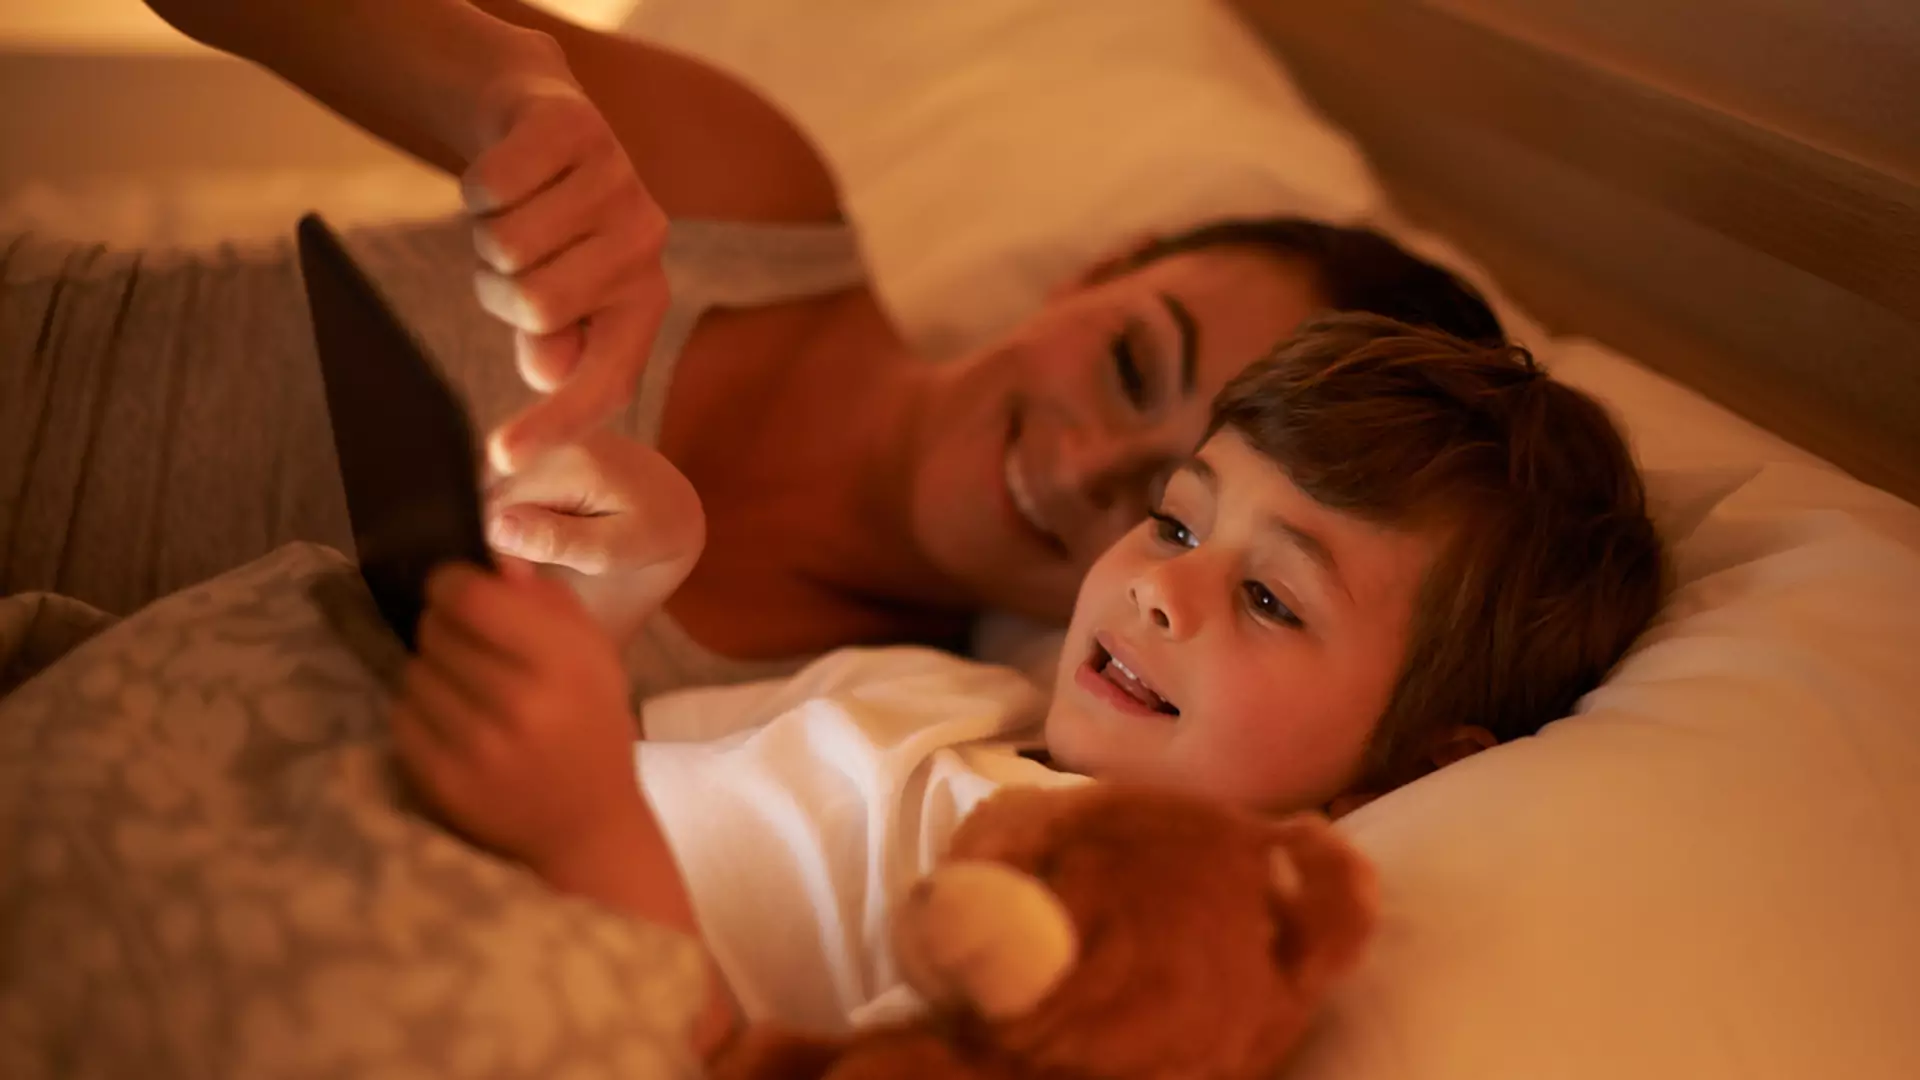 Leżenie z dzieckiem do czasu aż zaśnie nie robi z niego fajtłapy - mama pokazuje zalety